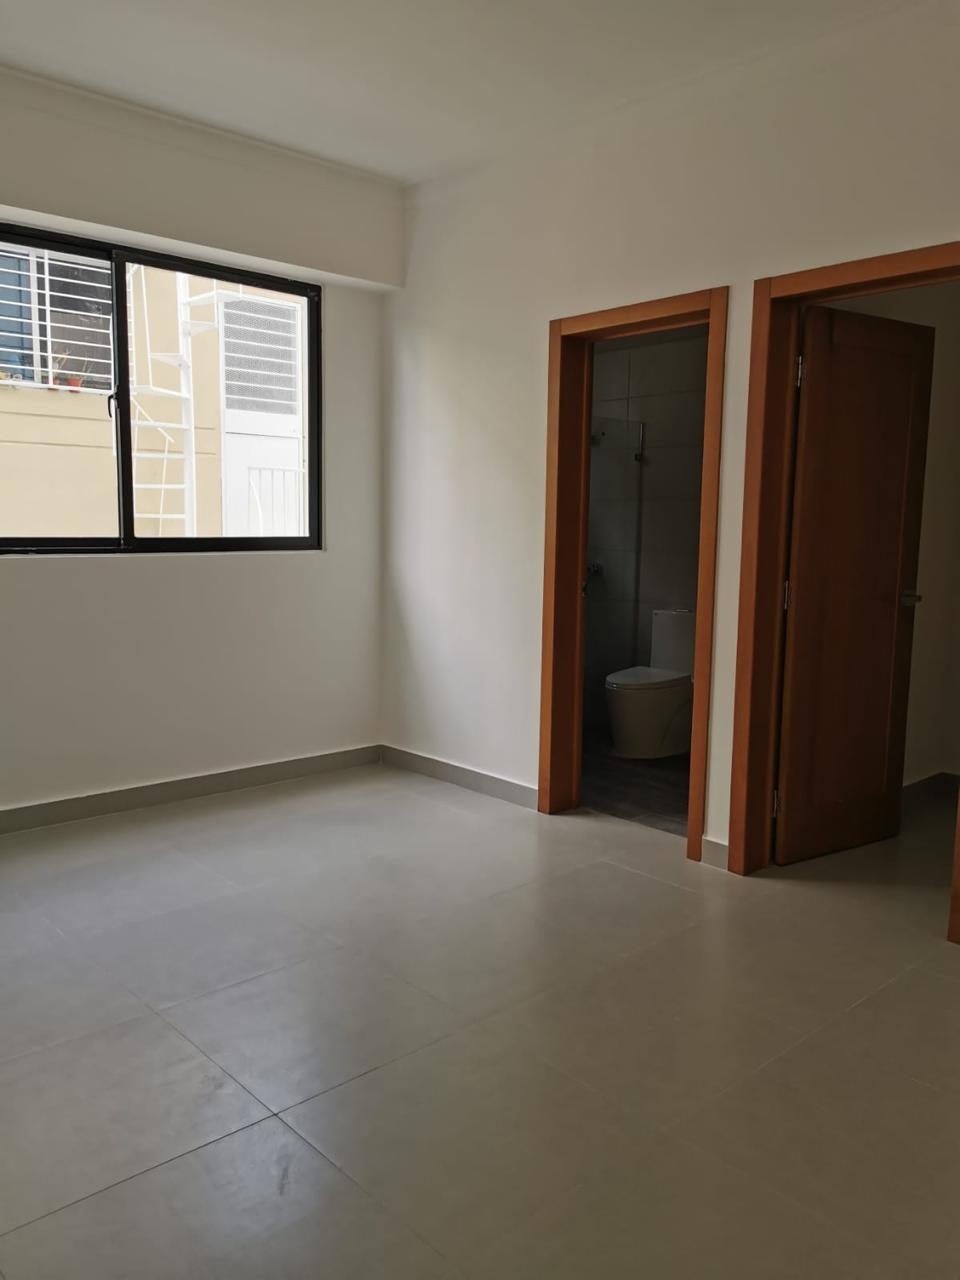 Apartamento en venta Zona Mirador Norte. Foto 7222409-7.jpg